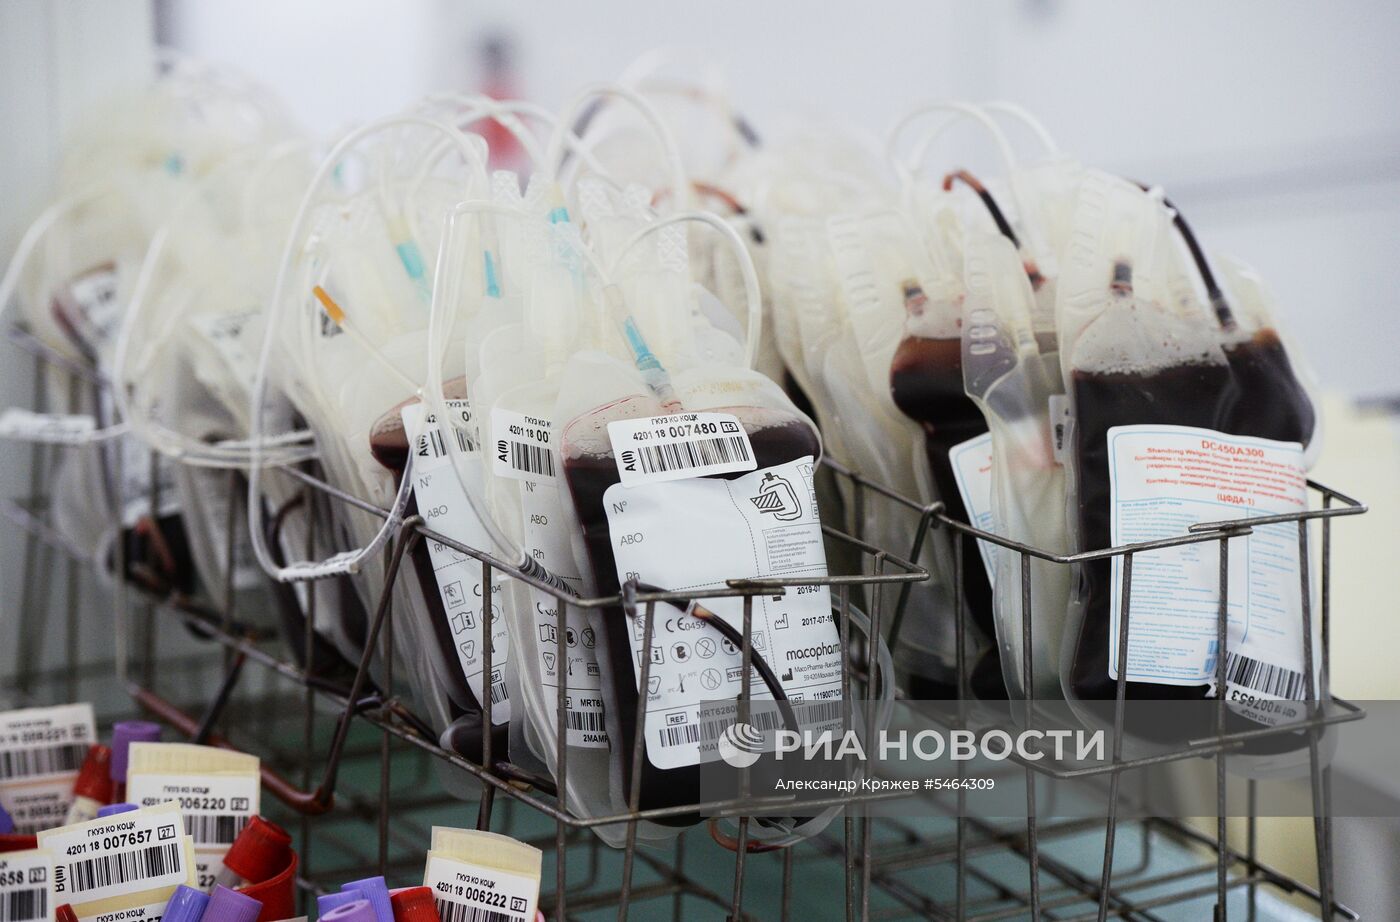 Сдача крови для пострадавших при пожаре в ТЦ "Зимняя вишня" 